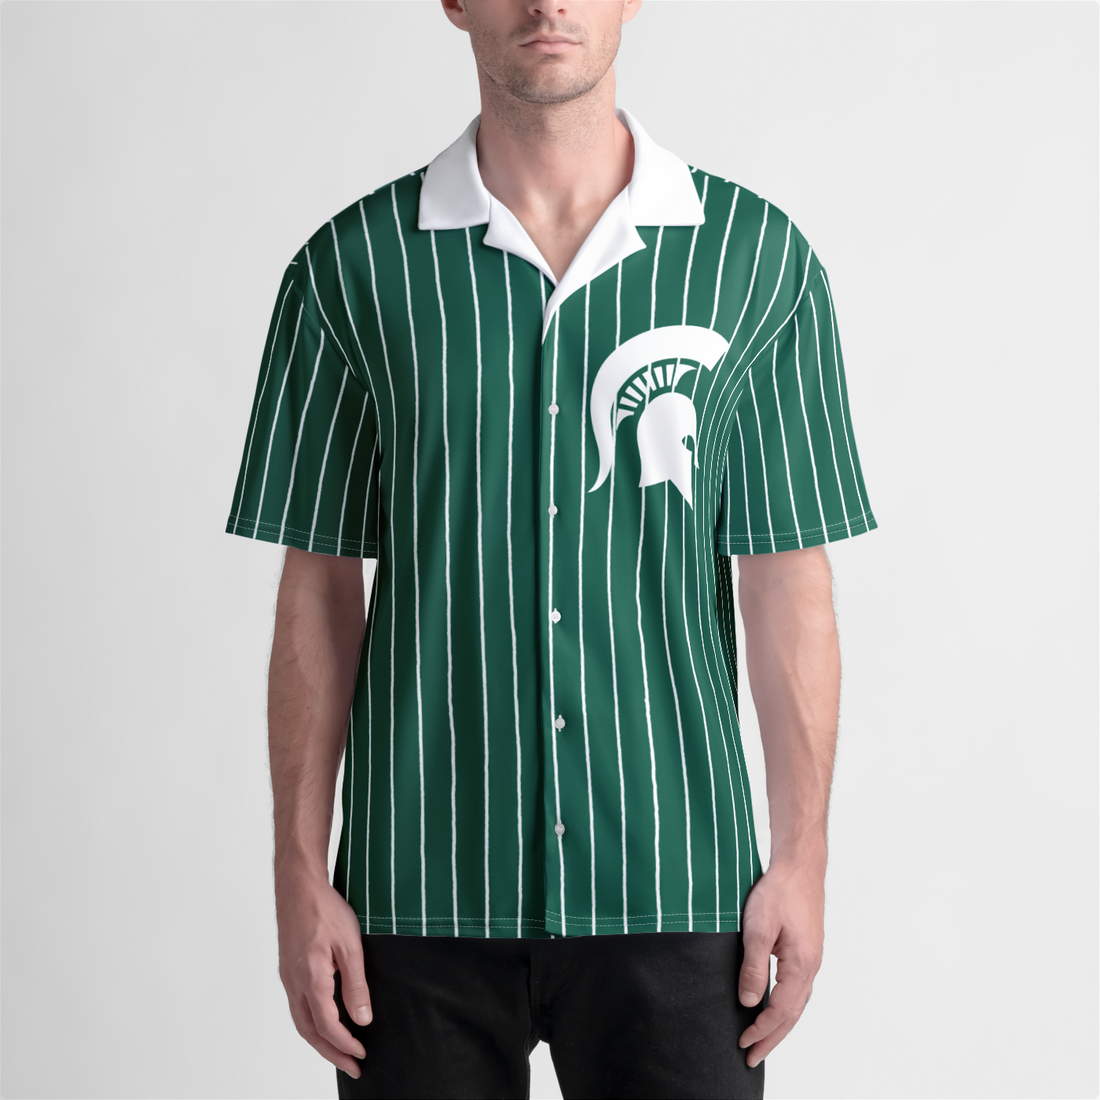 Michigan State Beach Shirt